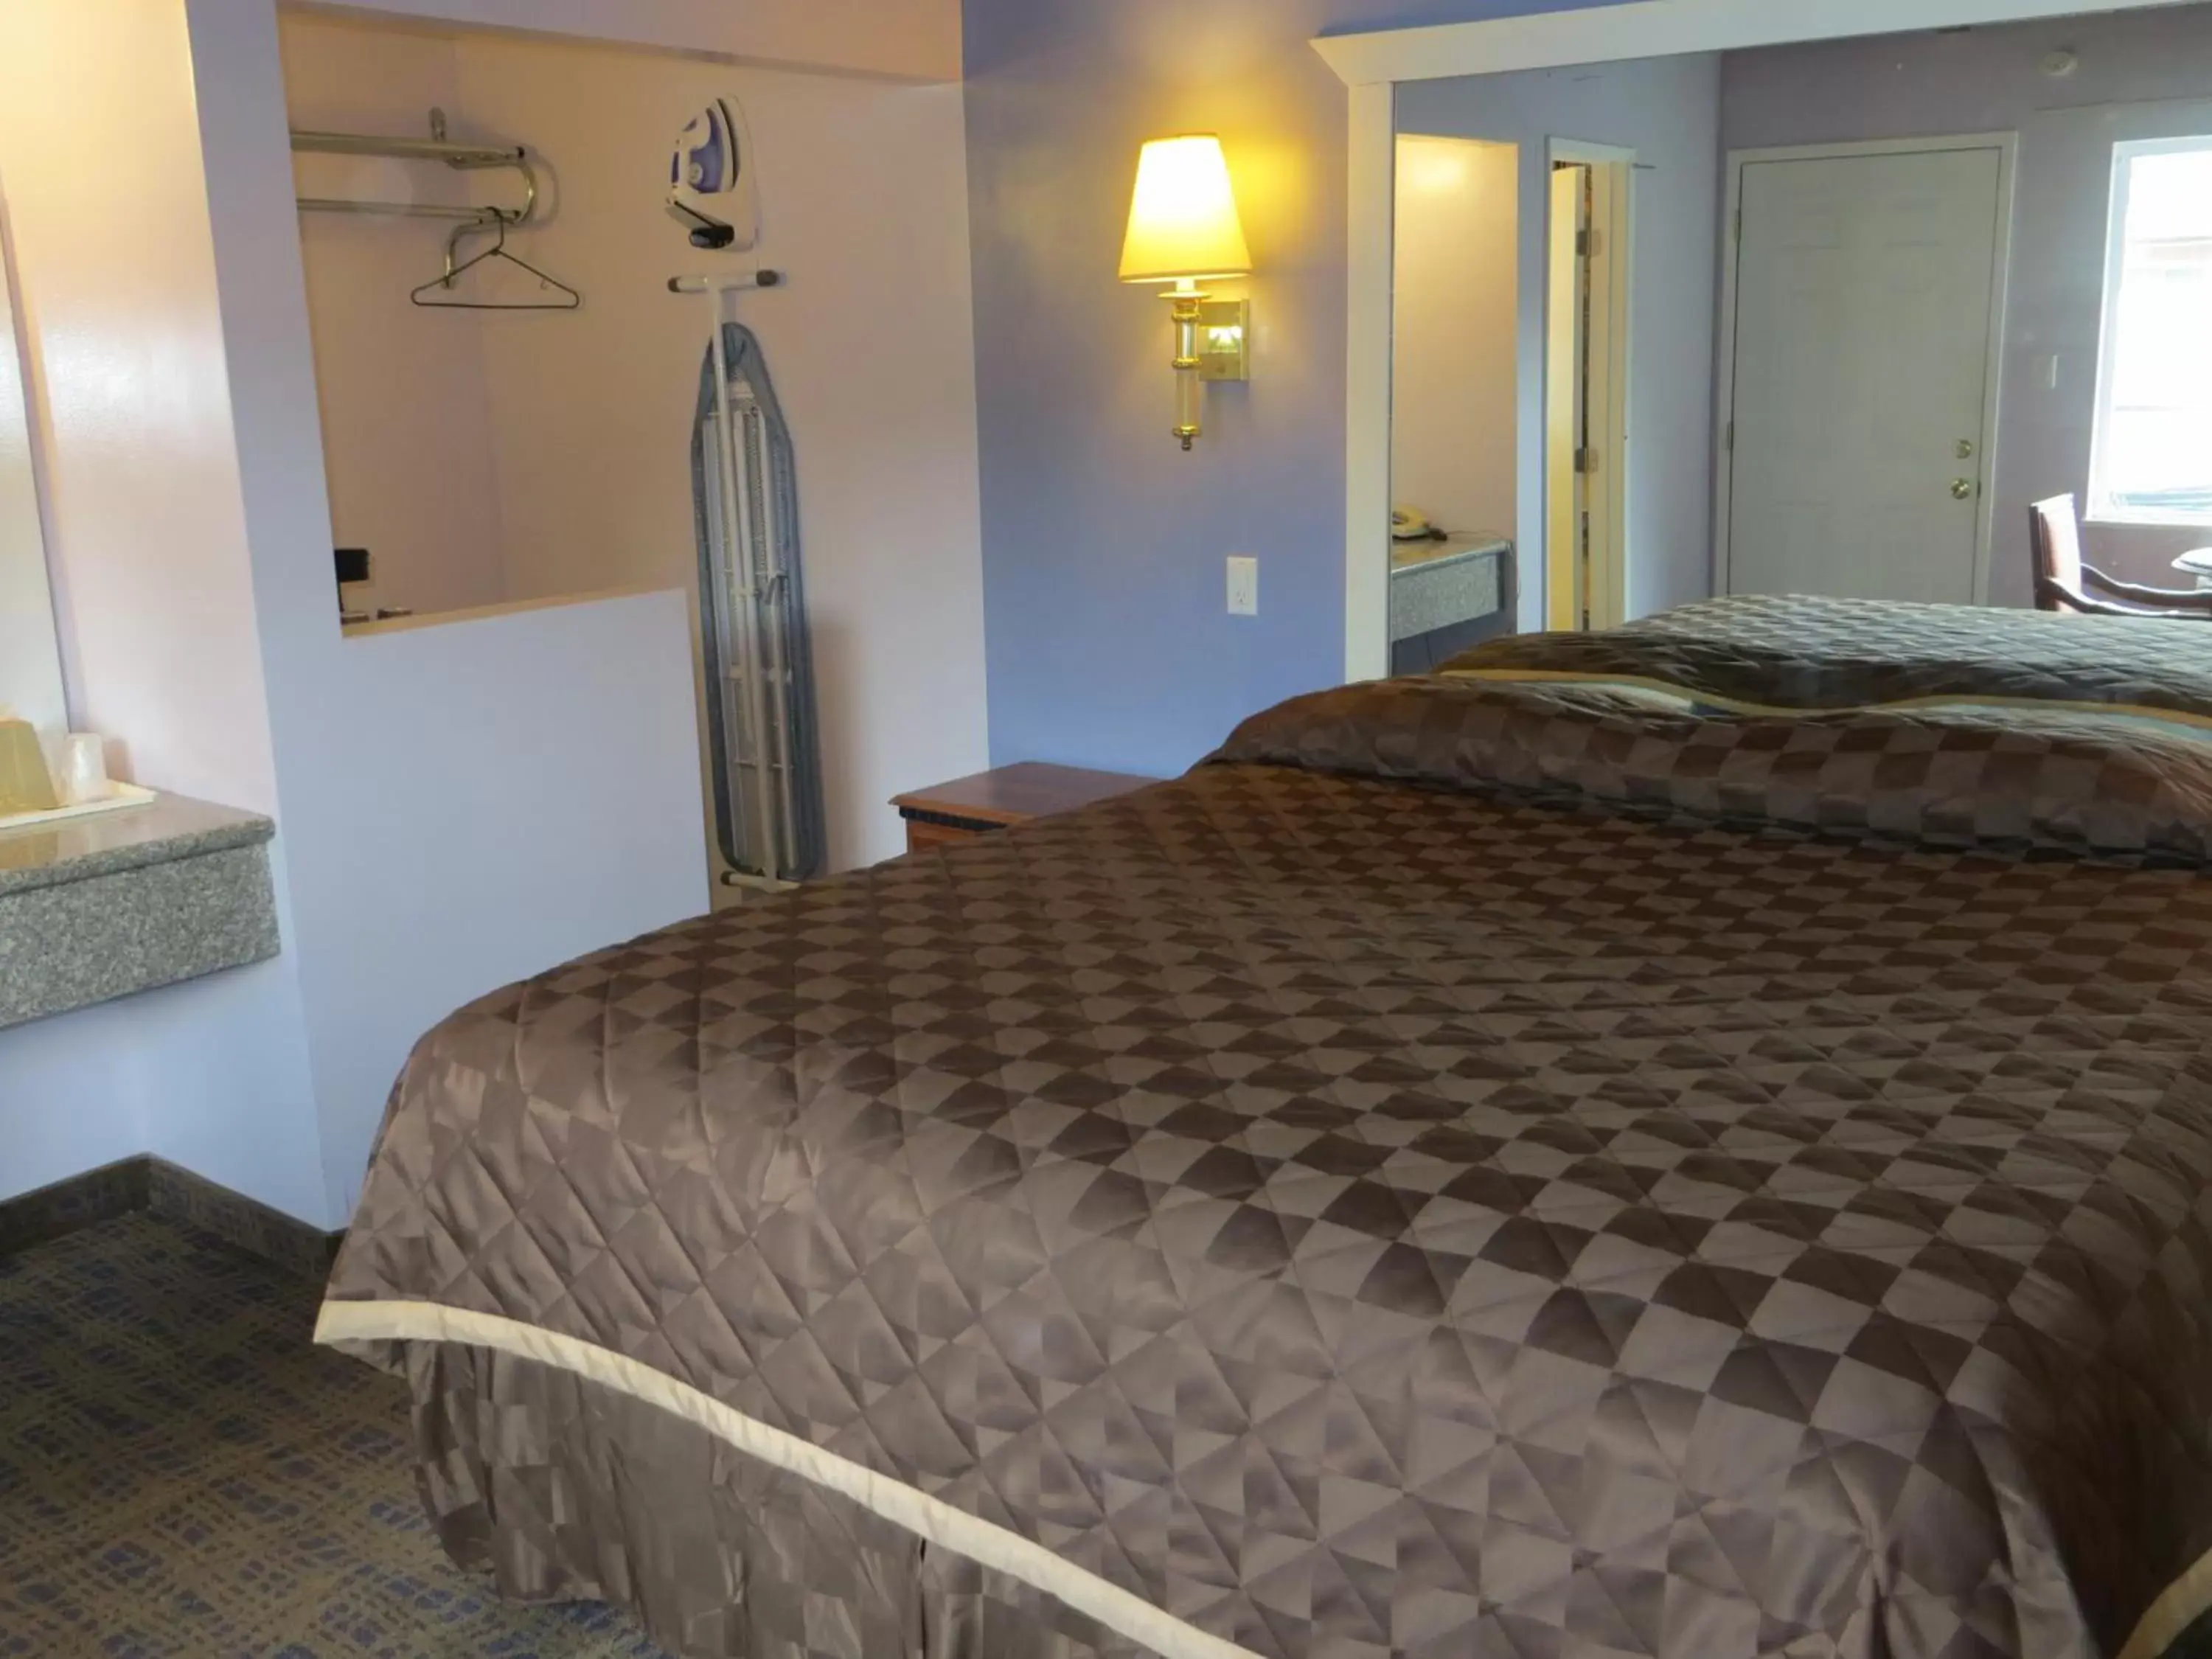 Bed in Park Cienega Motel